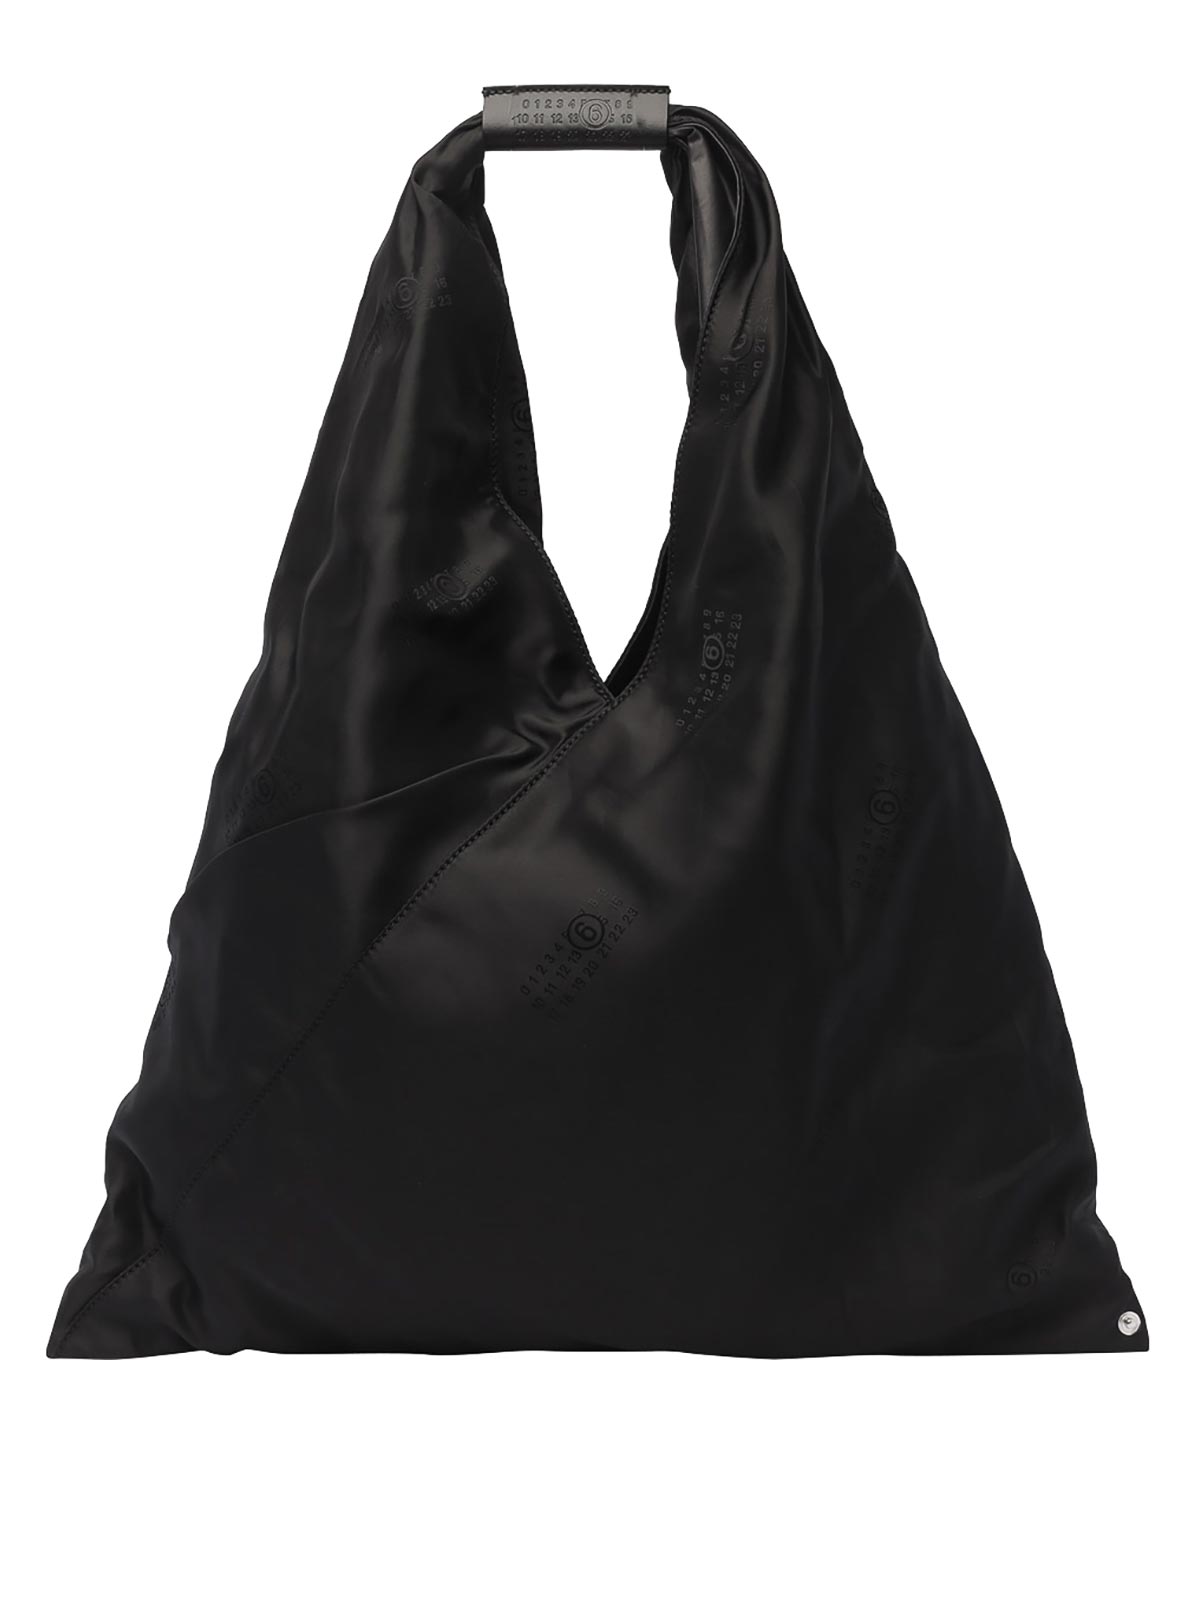 Mm6 Maison Margiela Japanese Bag In Black